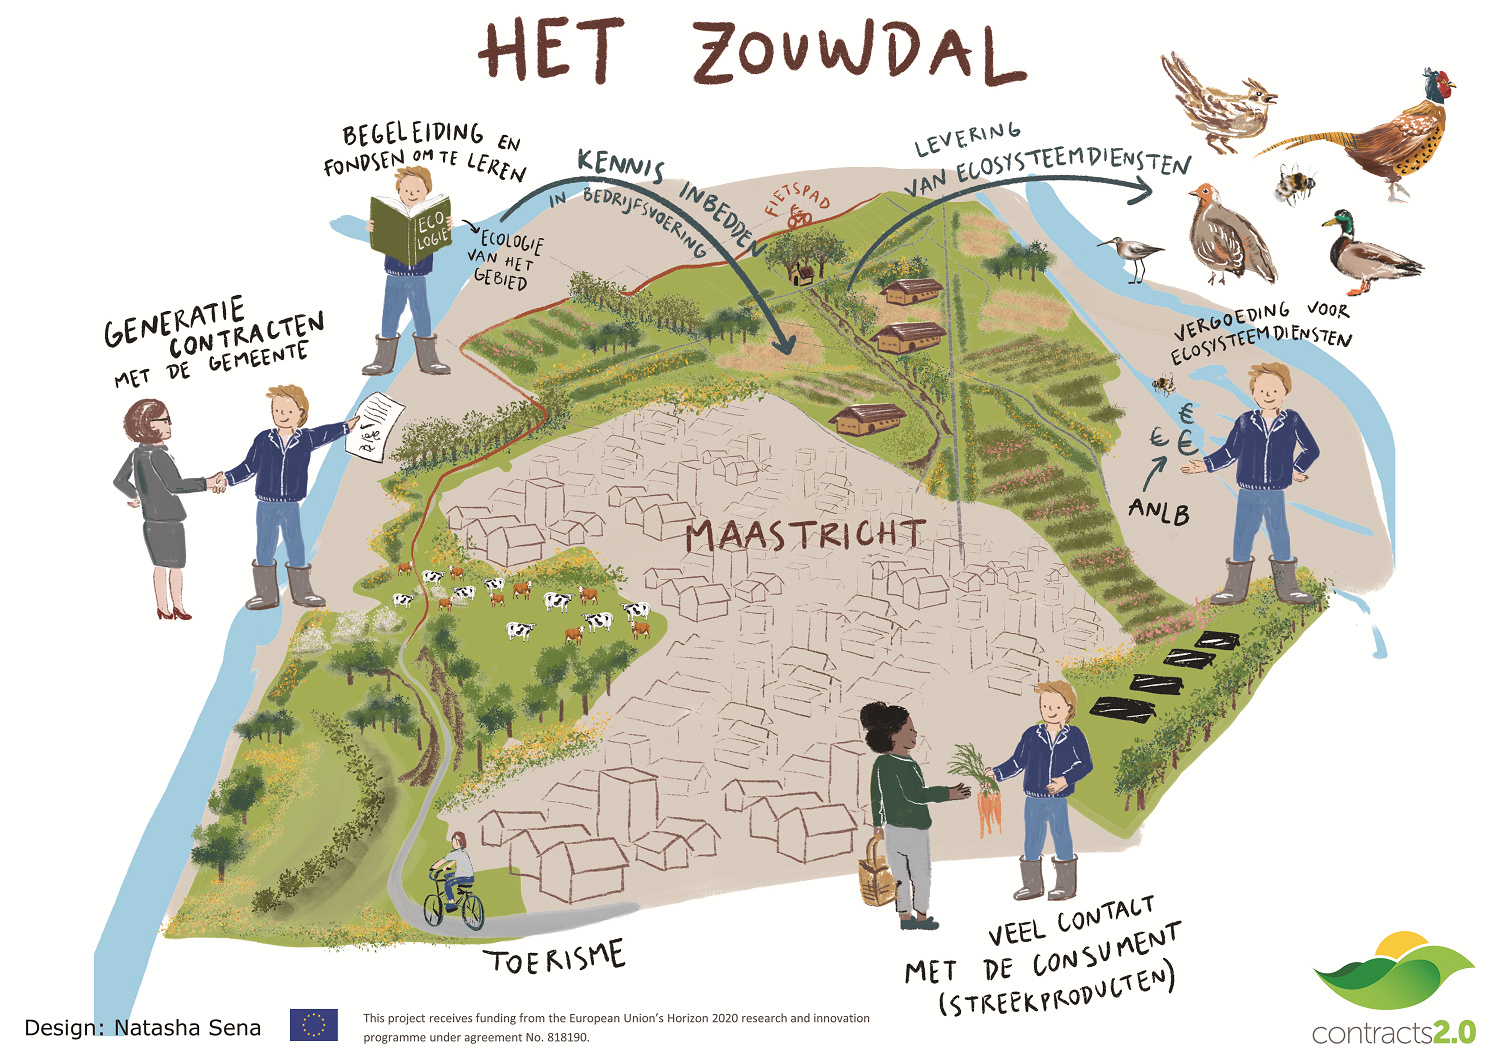 The future of farming in CIL Limburg